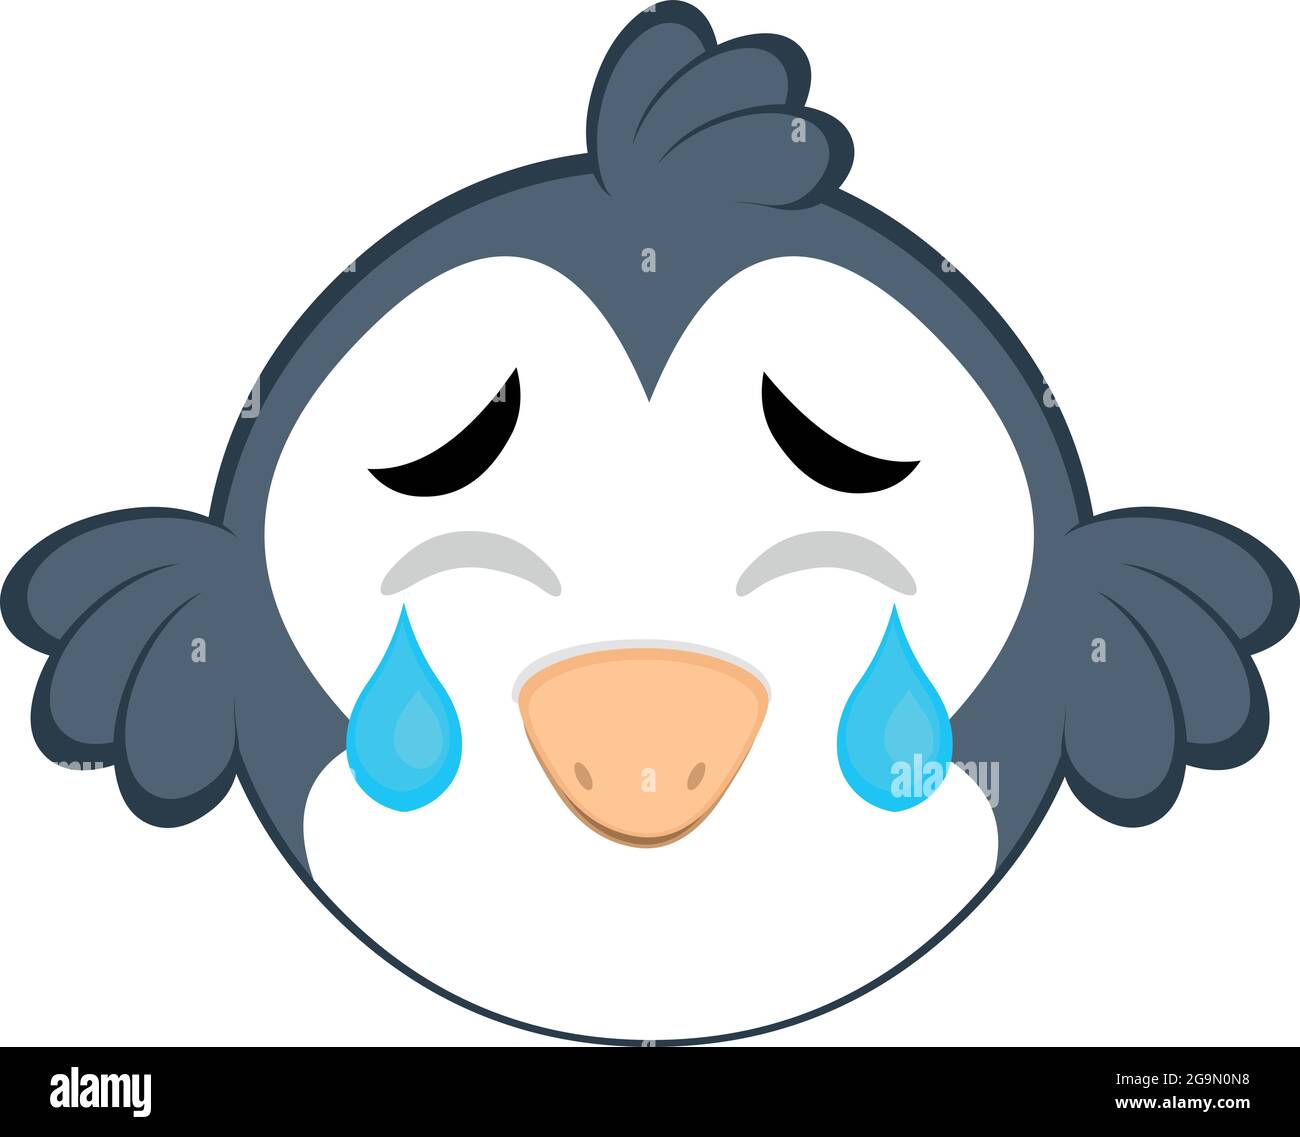 Vector emoticono ilustración de un pájaro de dibujos animados con una expresión triste, llanto y lágrimas cayendo de sus ojos Ilustración del Vector